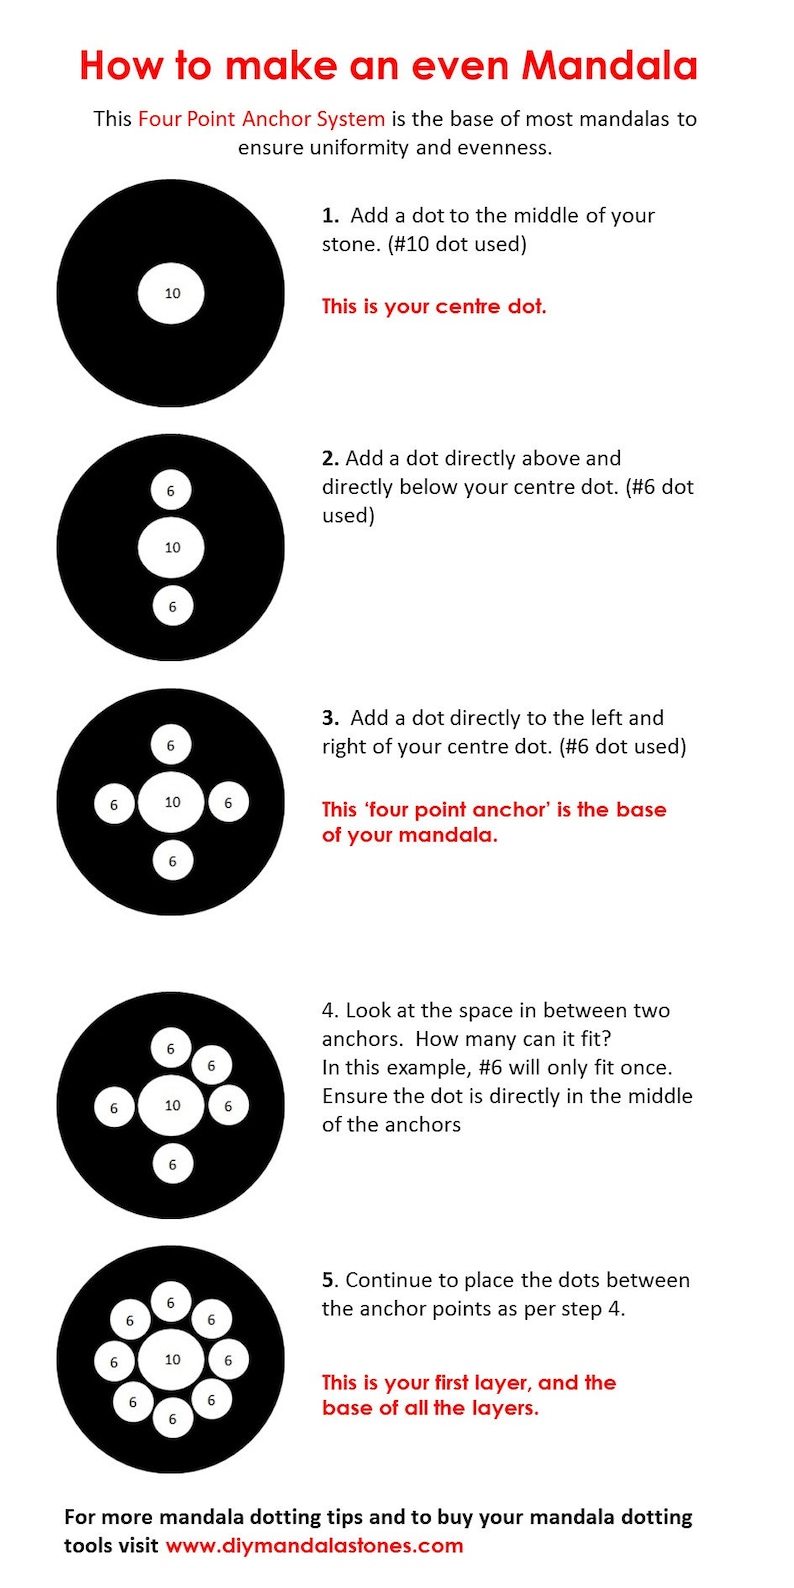 Mandala Dotting Tools size 1-16 image 7